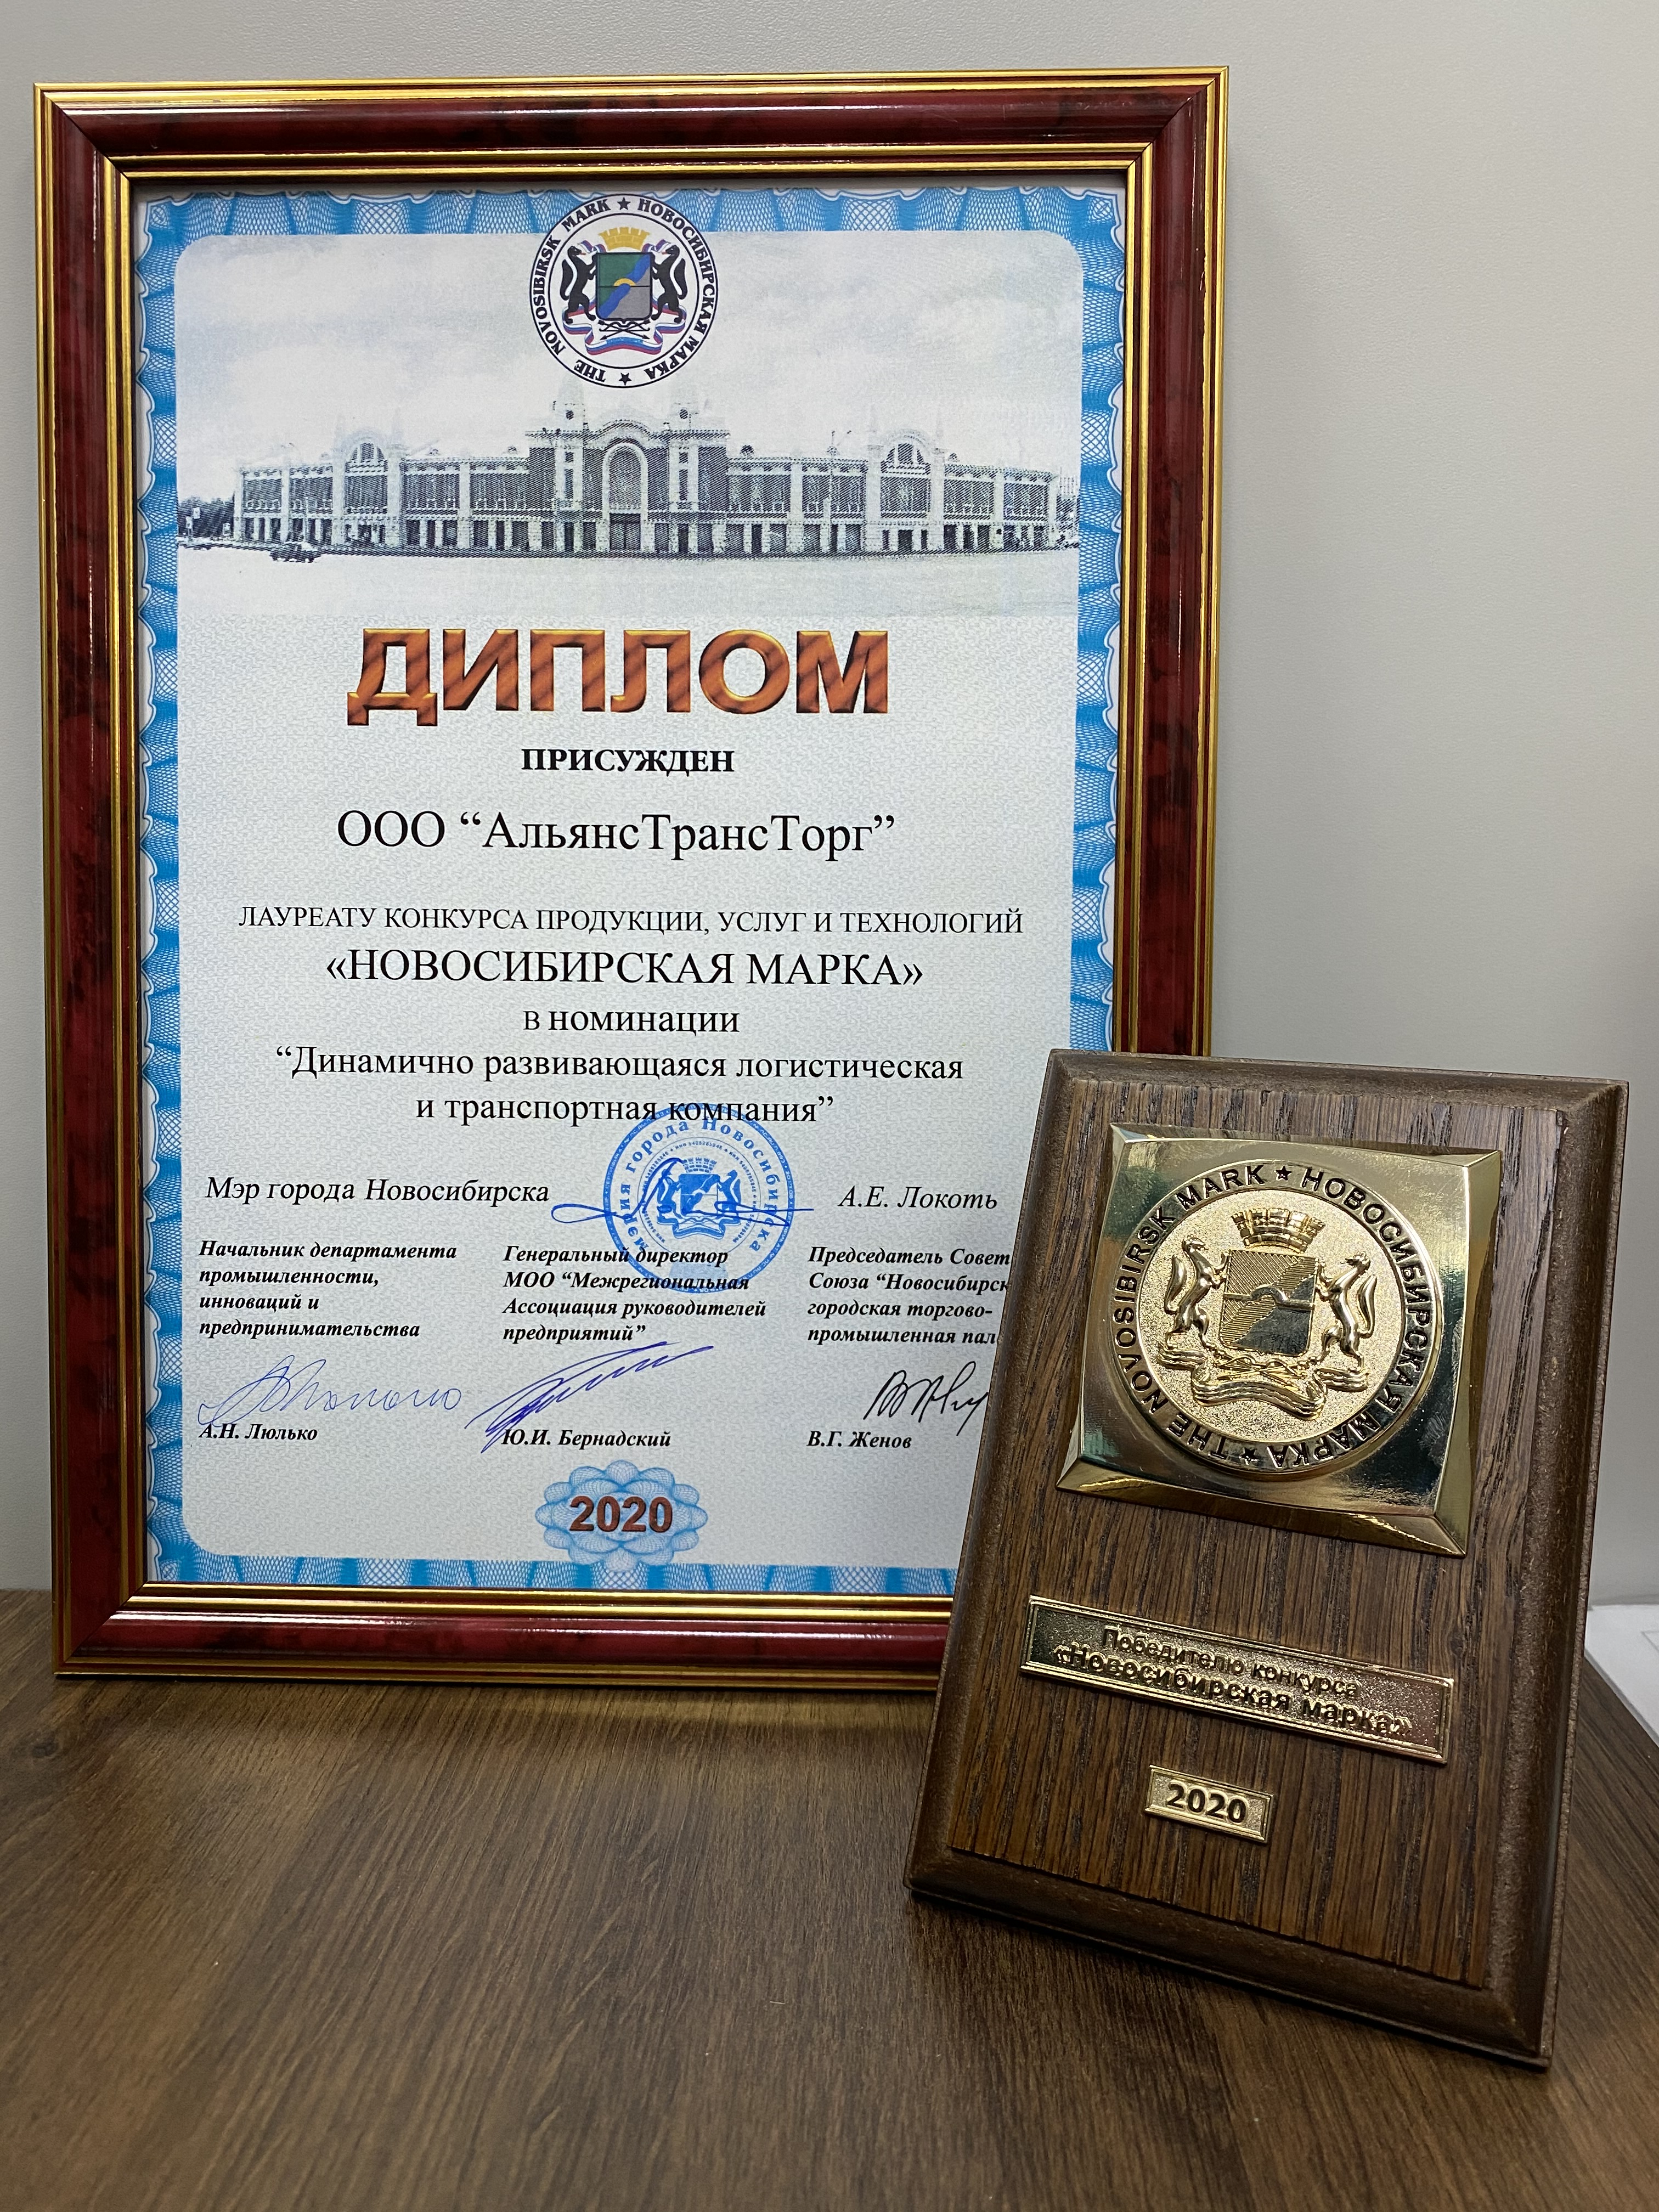 Компания &quot;АльянсТрансТорг&quot; получила награду &quot;Новосибирская марка&quot;